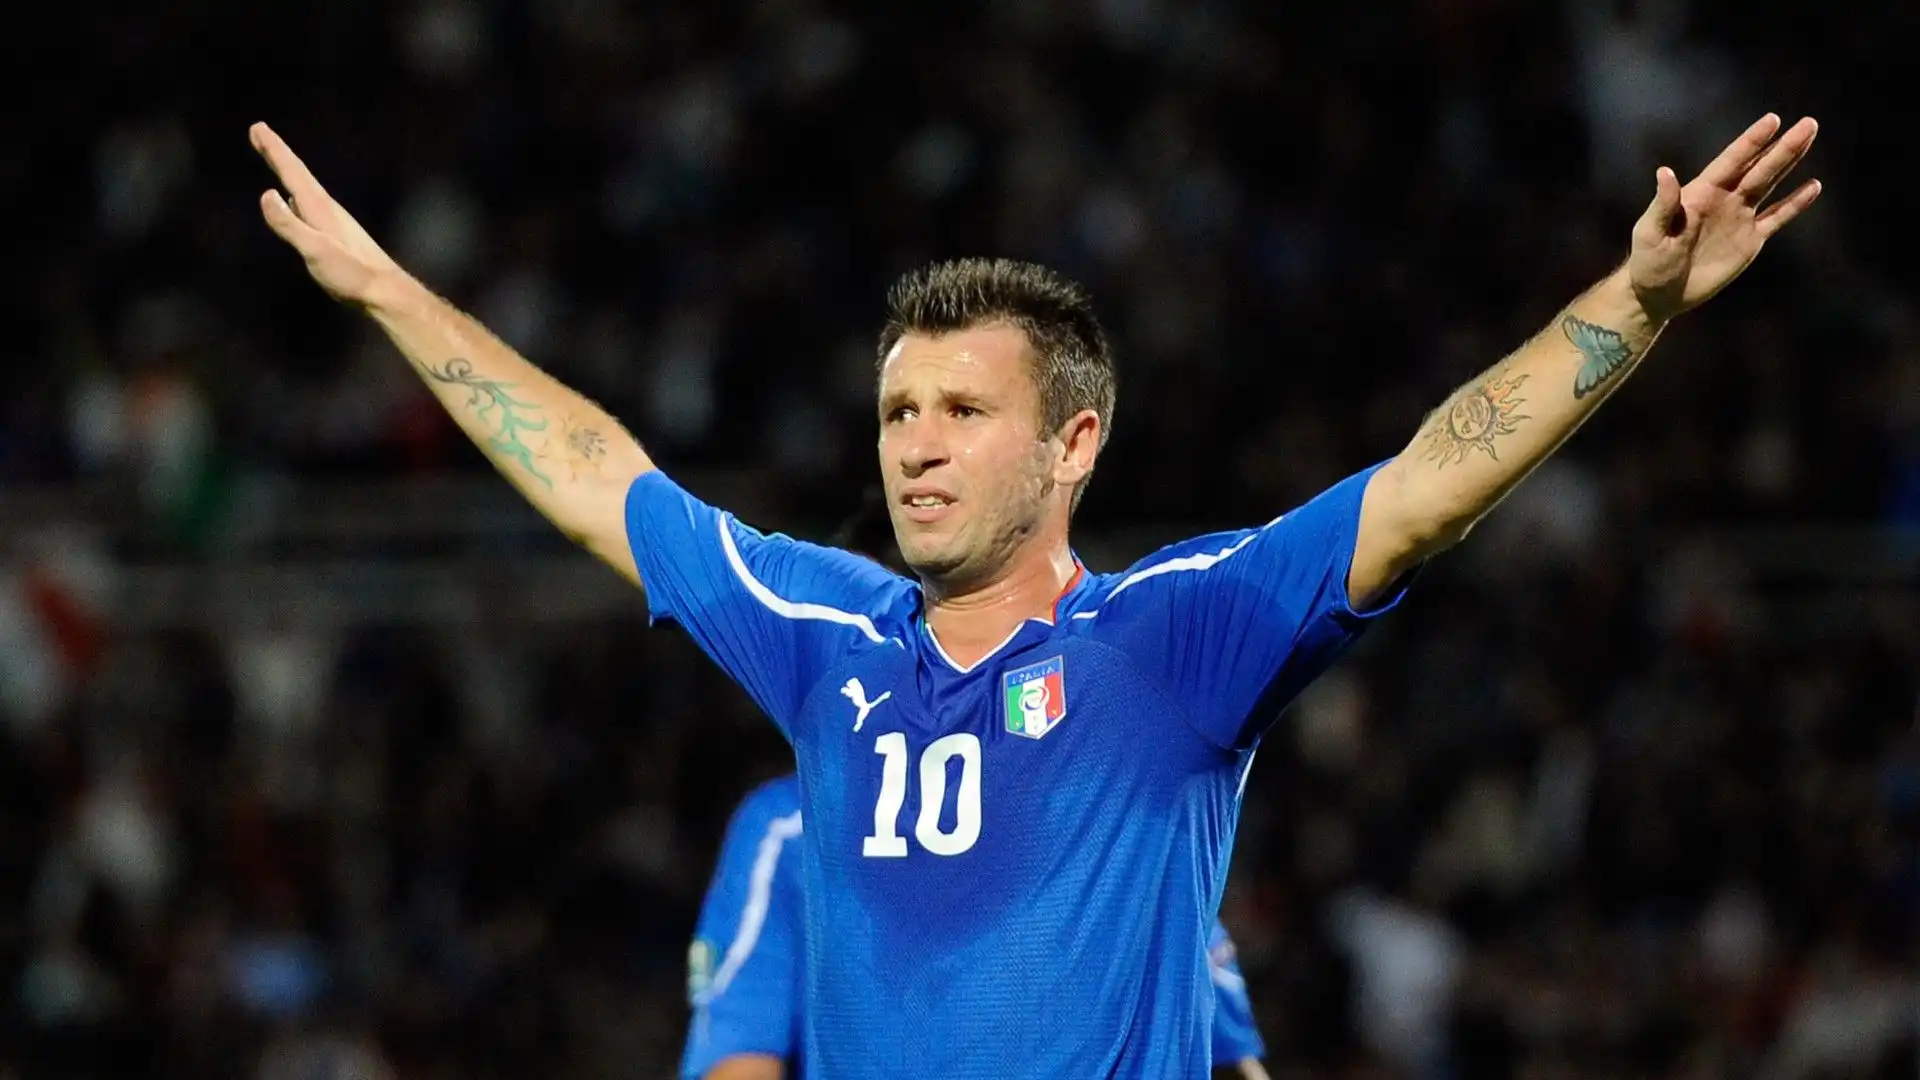 Con la nazionale maggiore italiana il trequartista ha segnato 10 gol in 39 partite